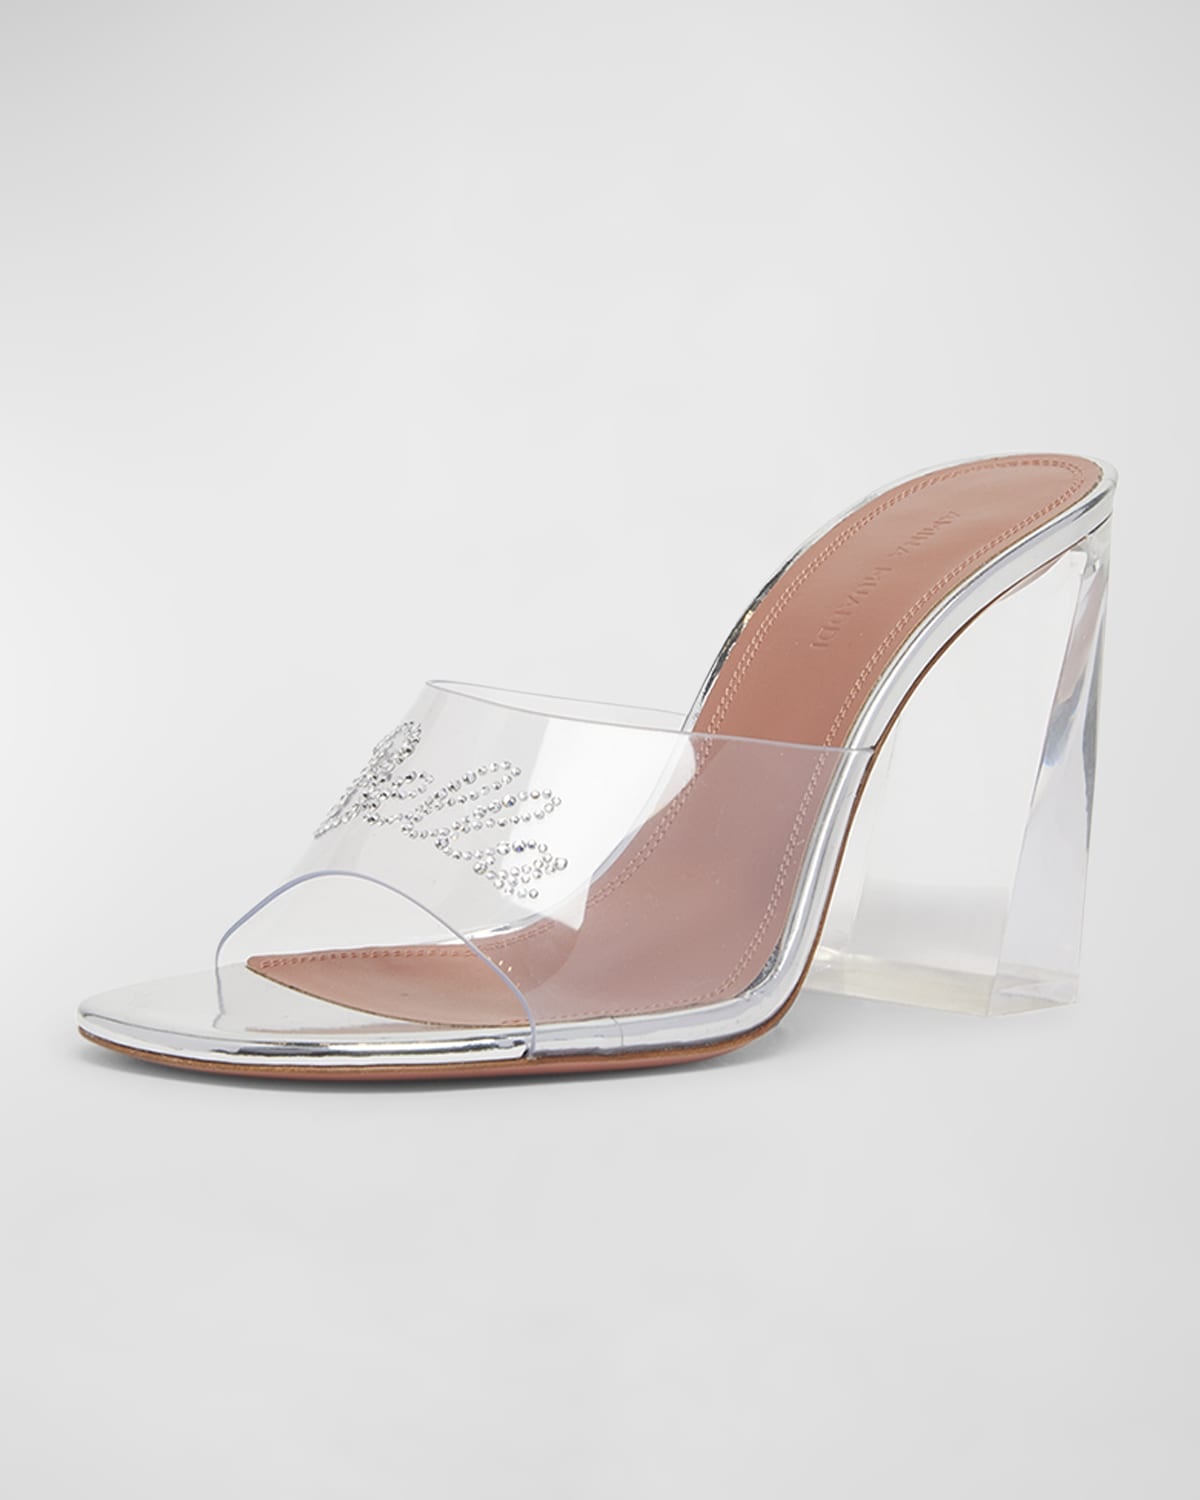 Bella Glass Slipper Mule Sandals - 2